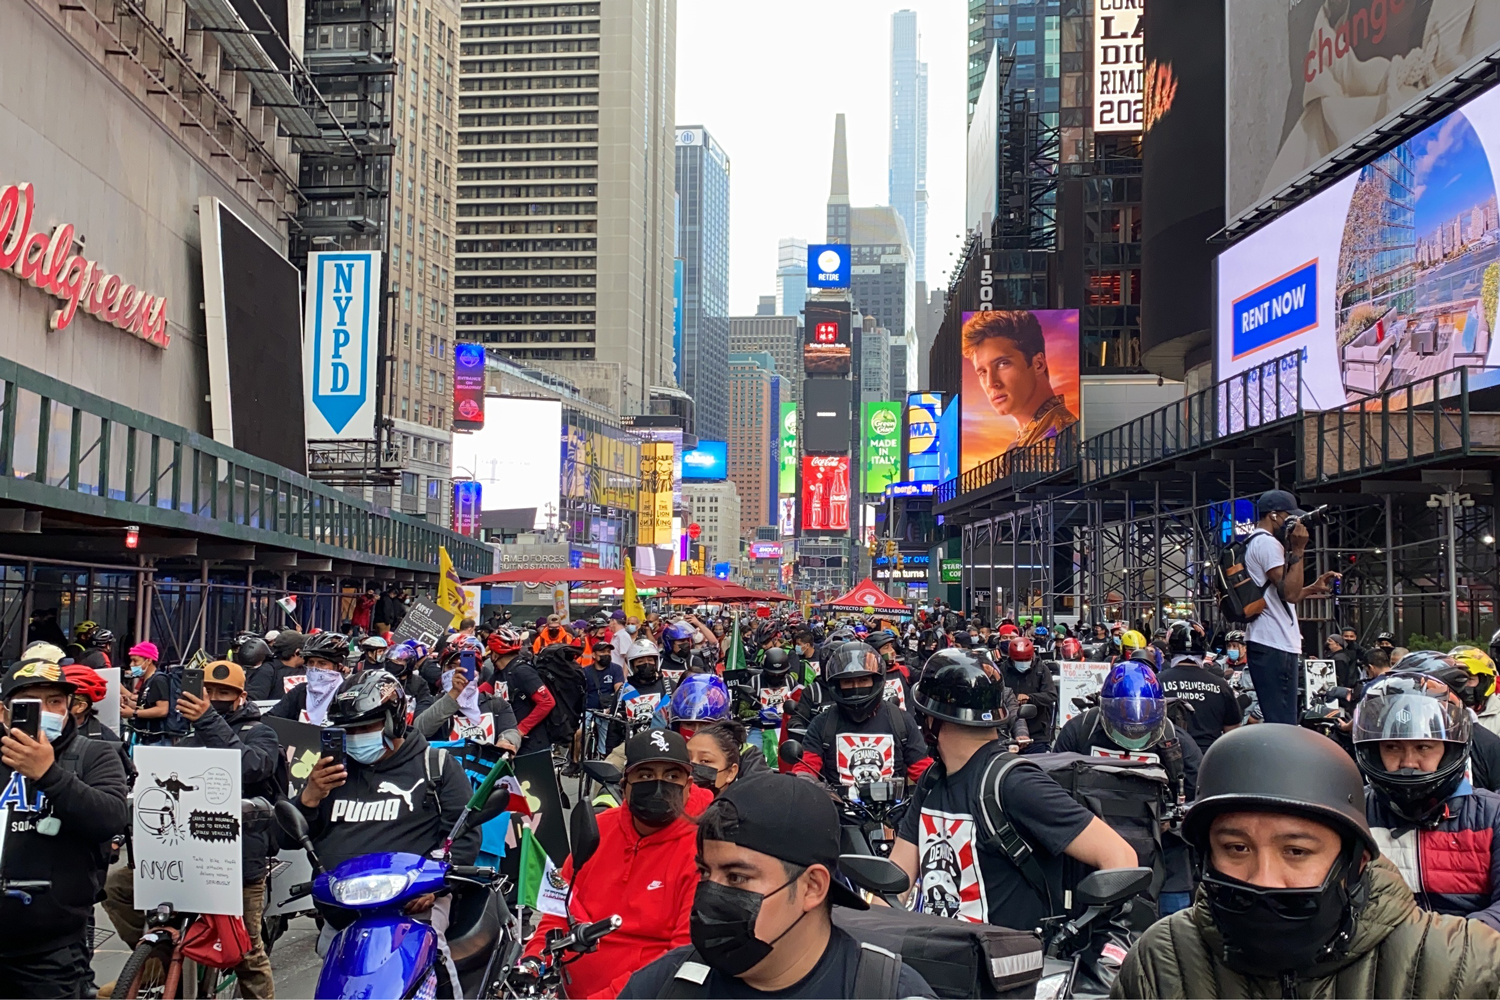 Los Deliveristas Unidos protest in Times Square.